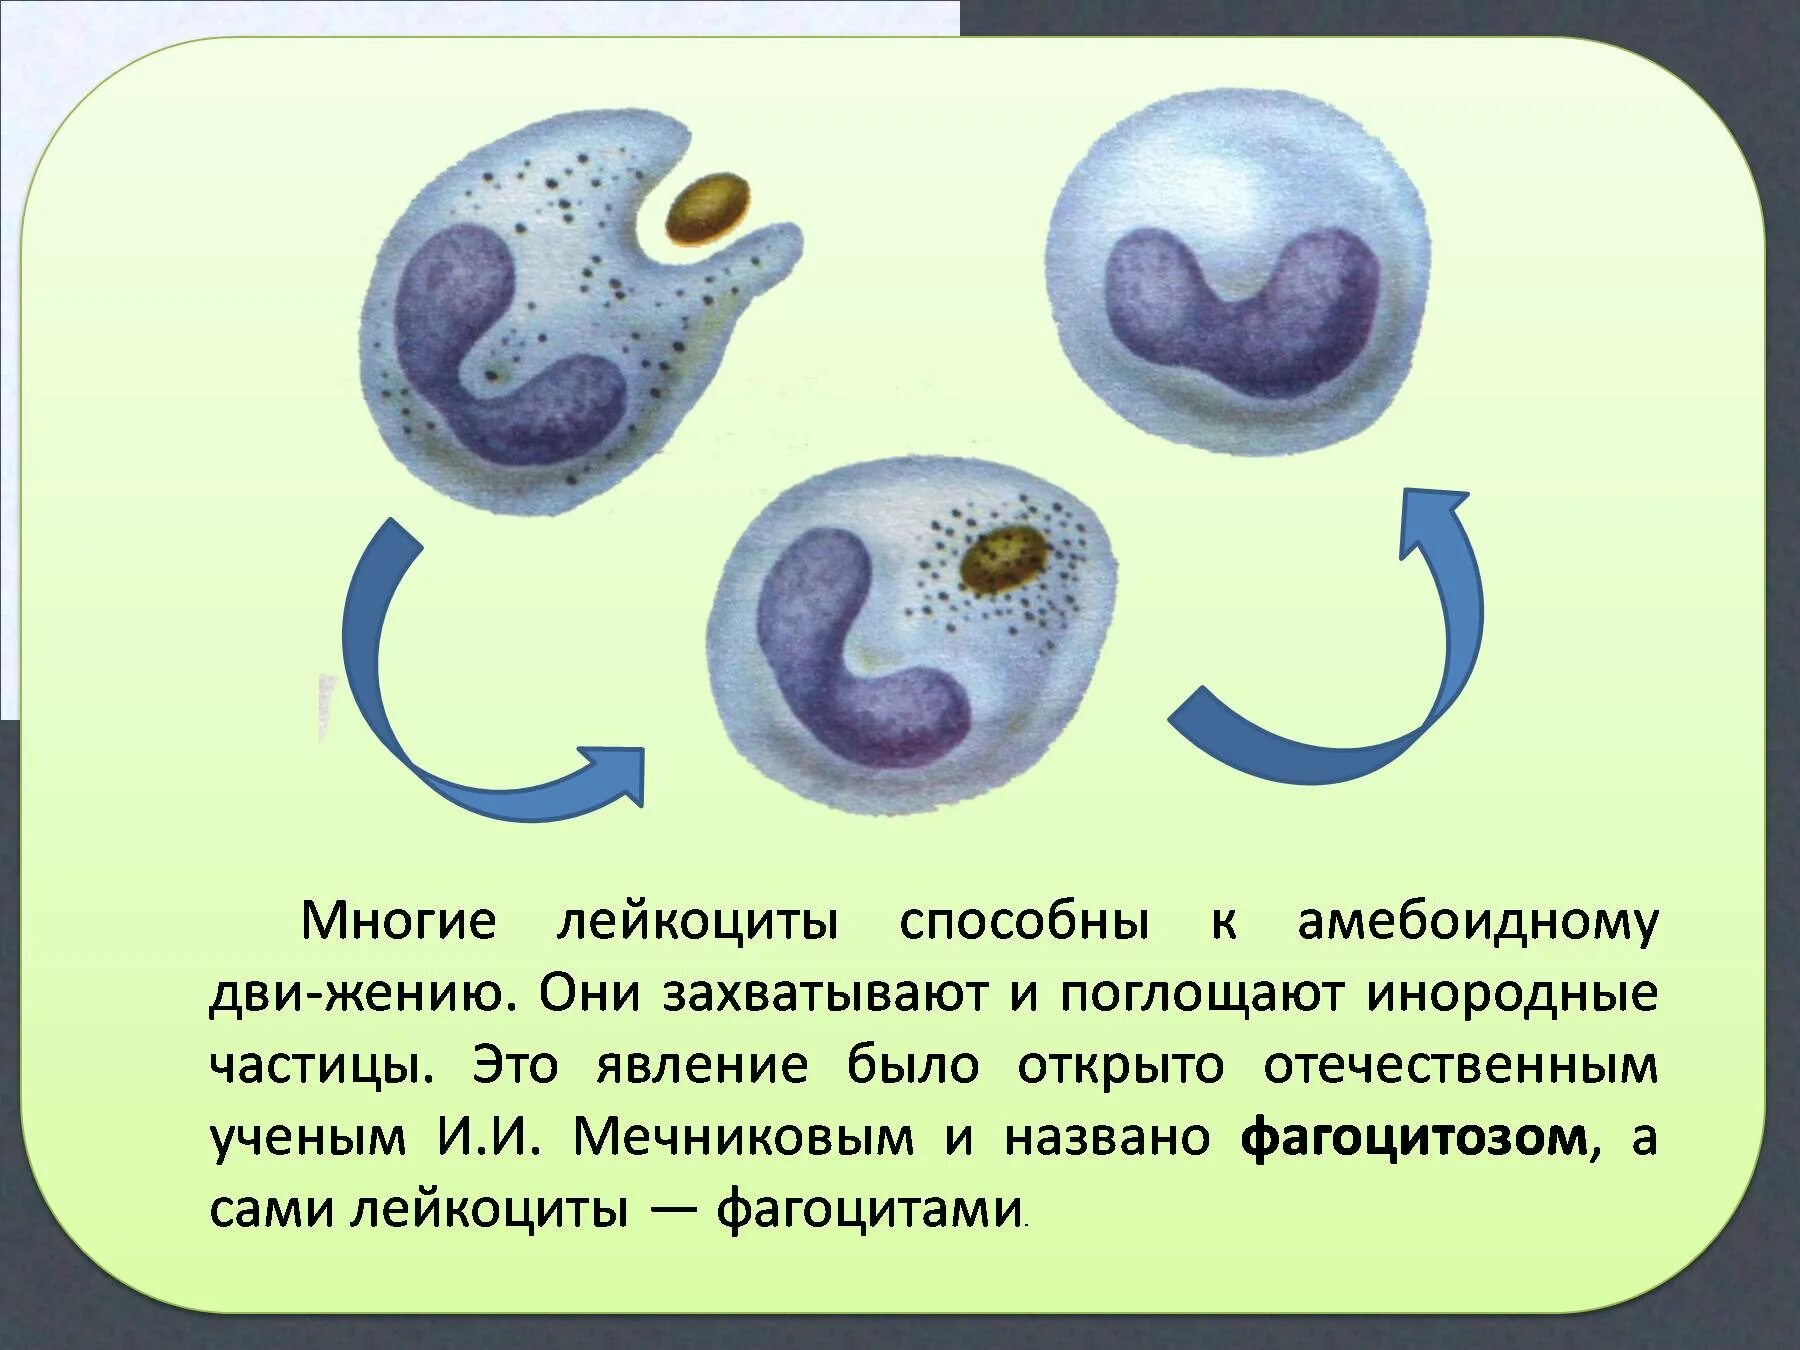 Эритроциты фагоциты лейкоциты. Лейкоциты способные к амебоидному движению. Передвижение лейкоцитов. Фагоцитоз лейкоцитов. Элементы крови способные к фагоцитозу